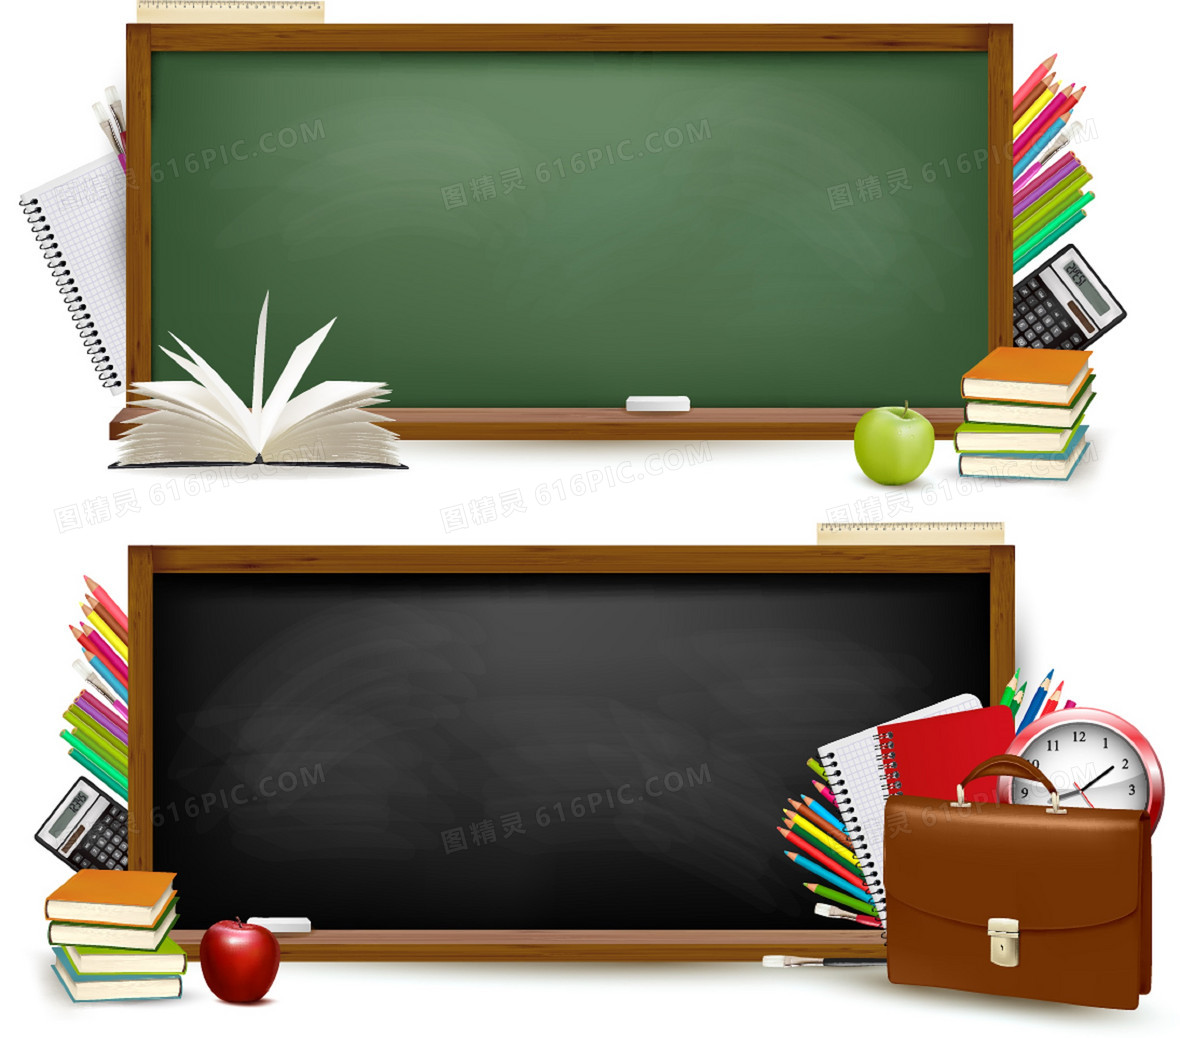 创意黑板书本教育学习背景2362 × 1181jpgpsdepscdraipsd全部格式方